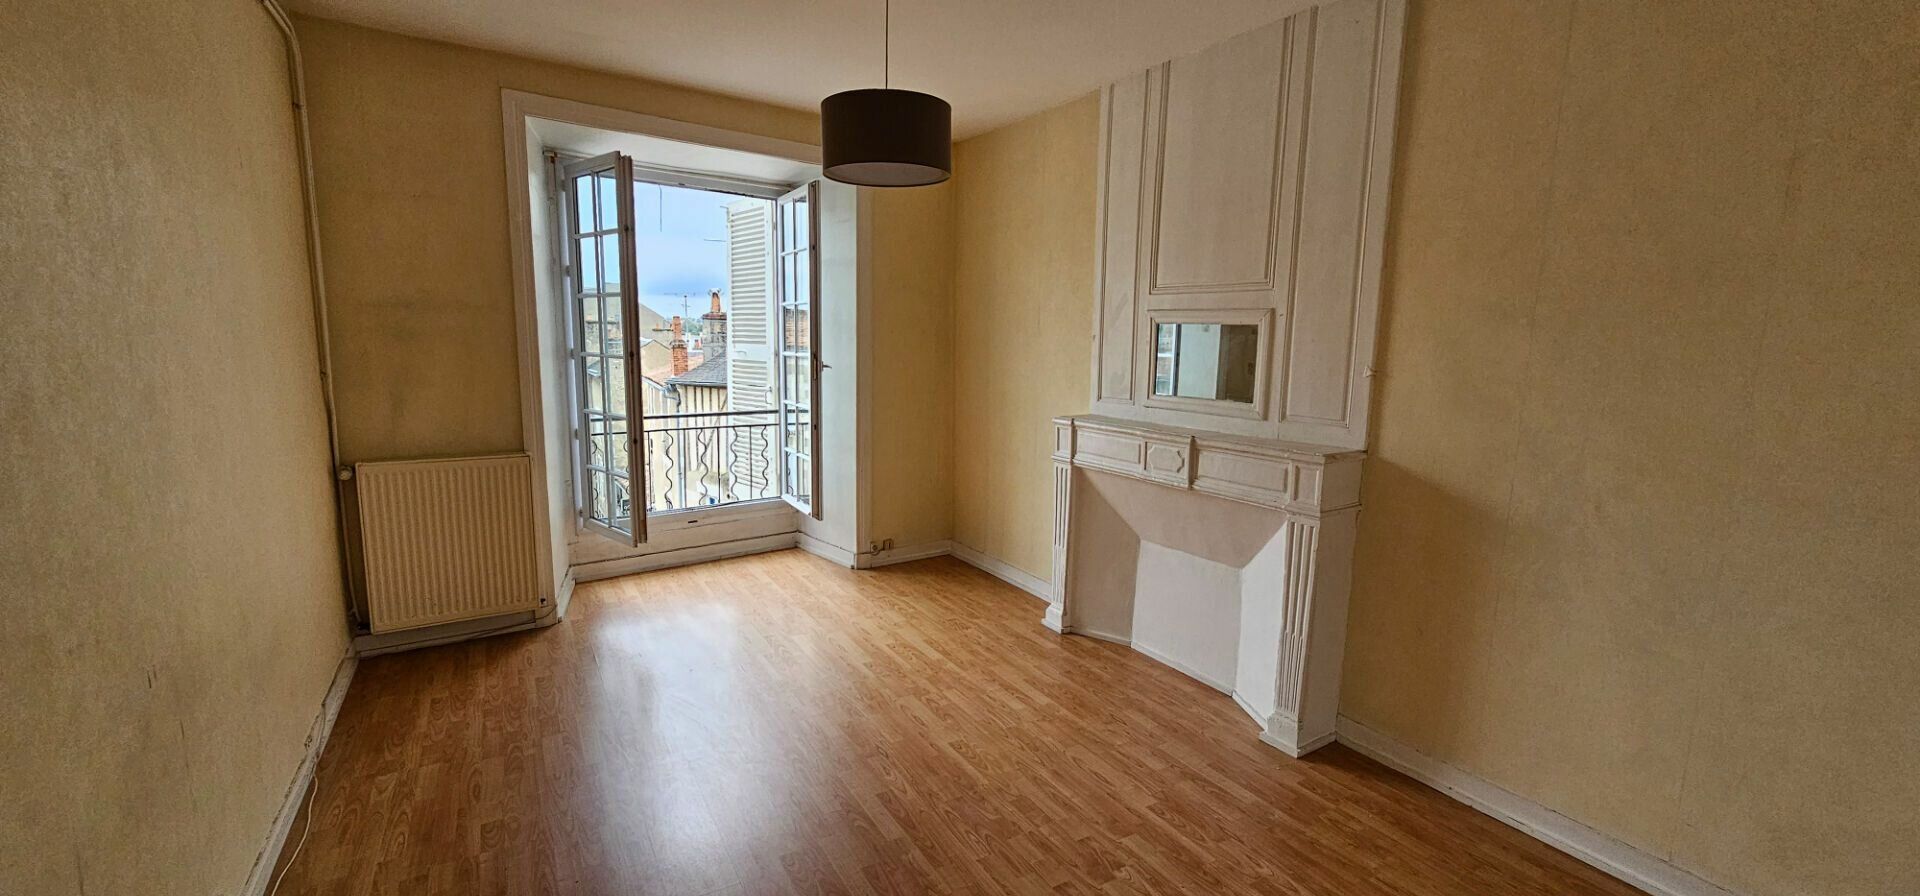 Appartement à vendre 2 71.31m2 à Poitiers vignette-4